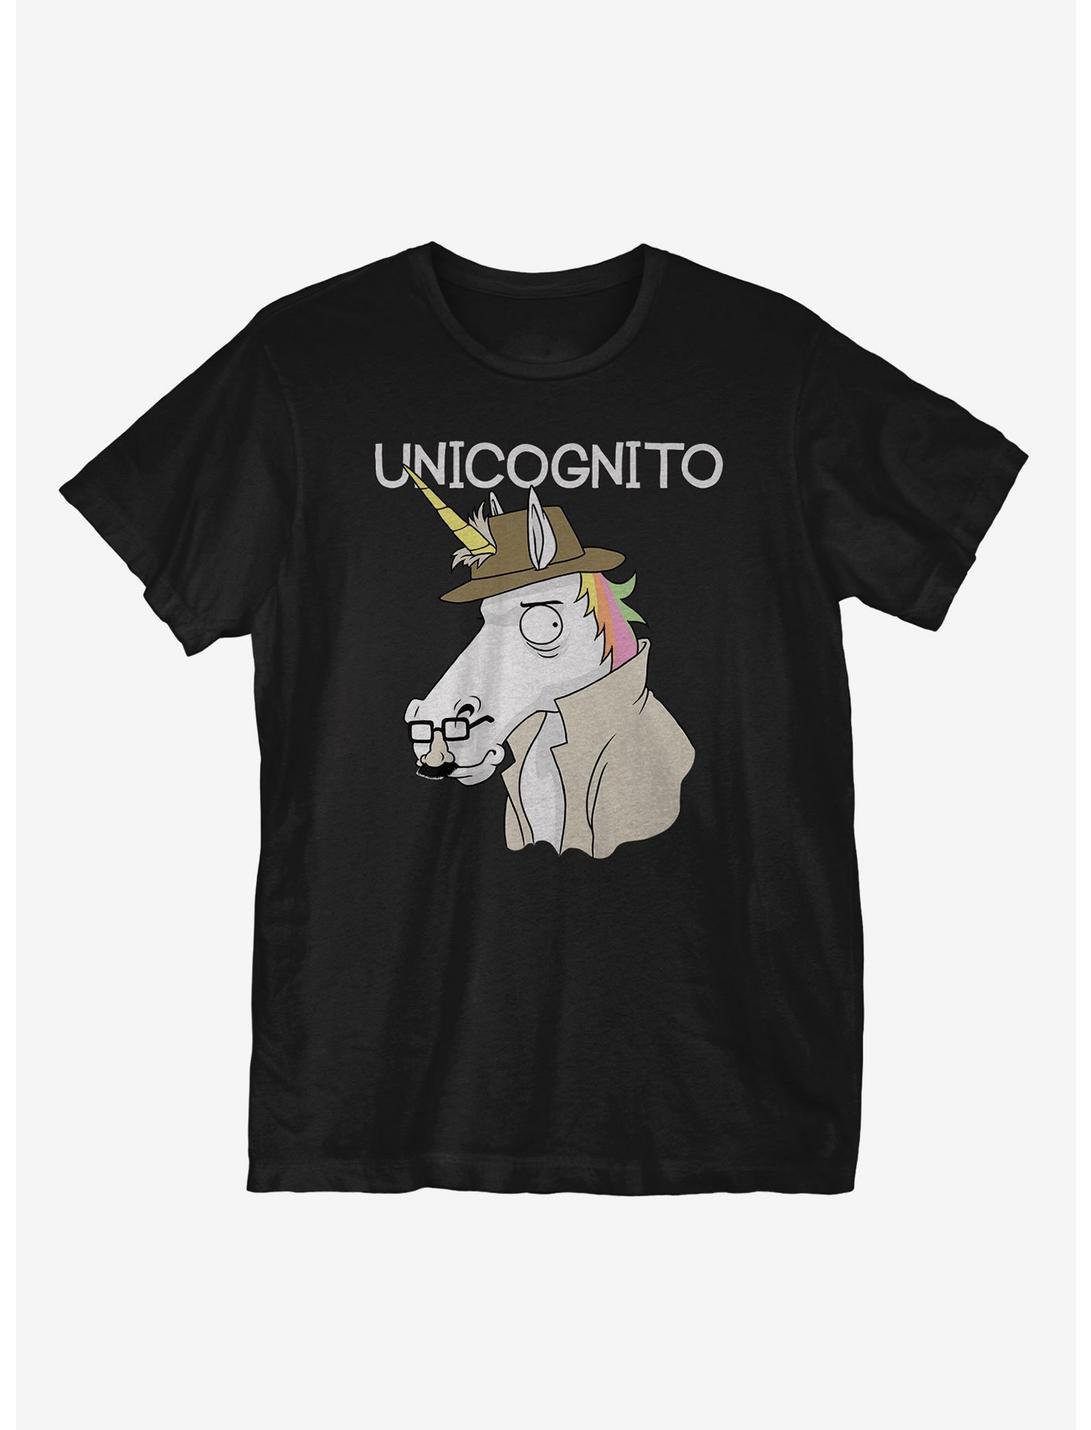 Unicognito T-Shirt, BLACK, hi-res